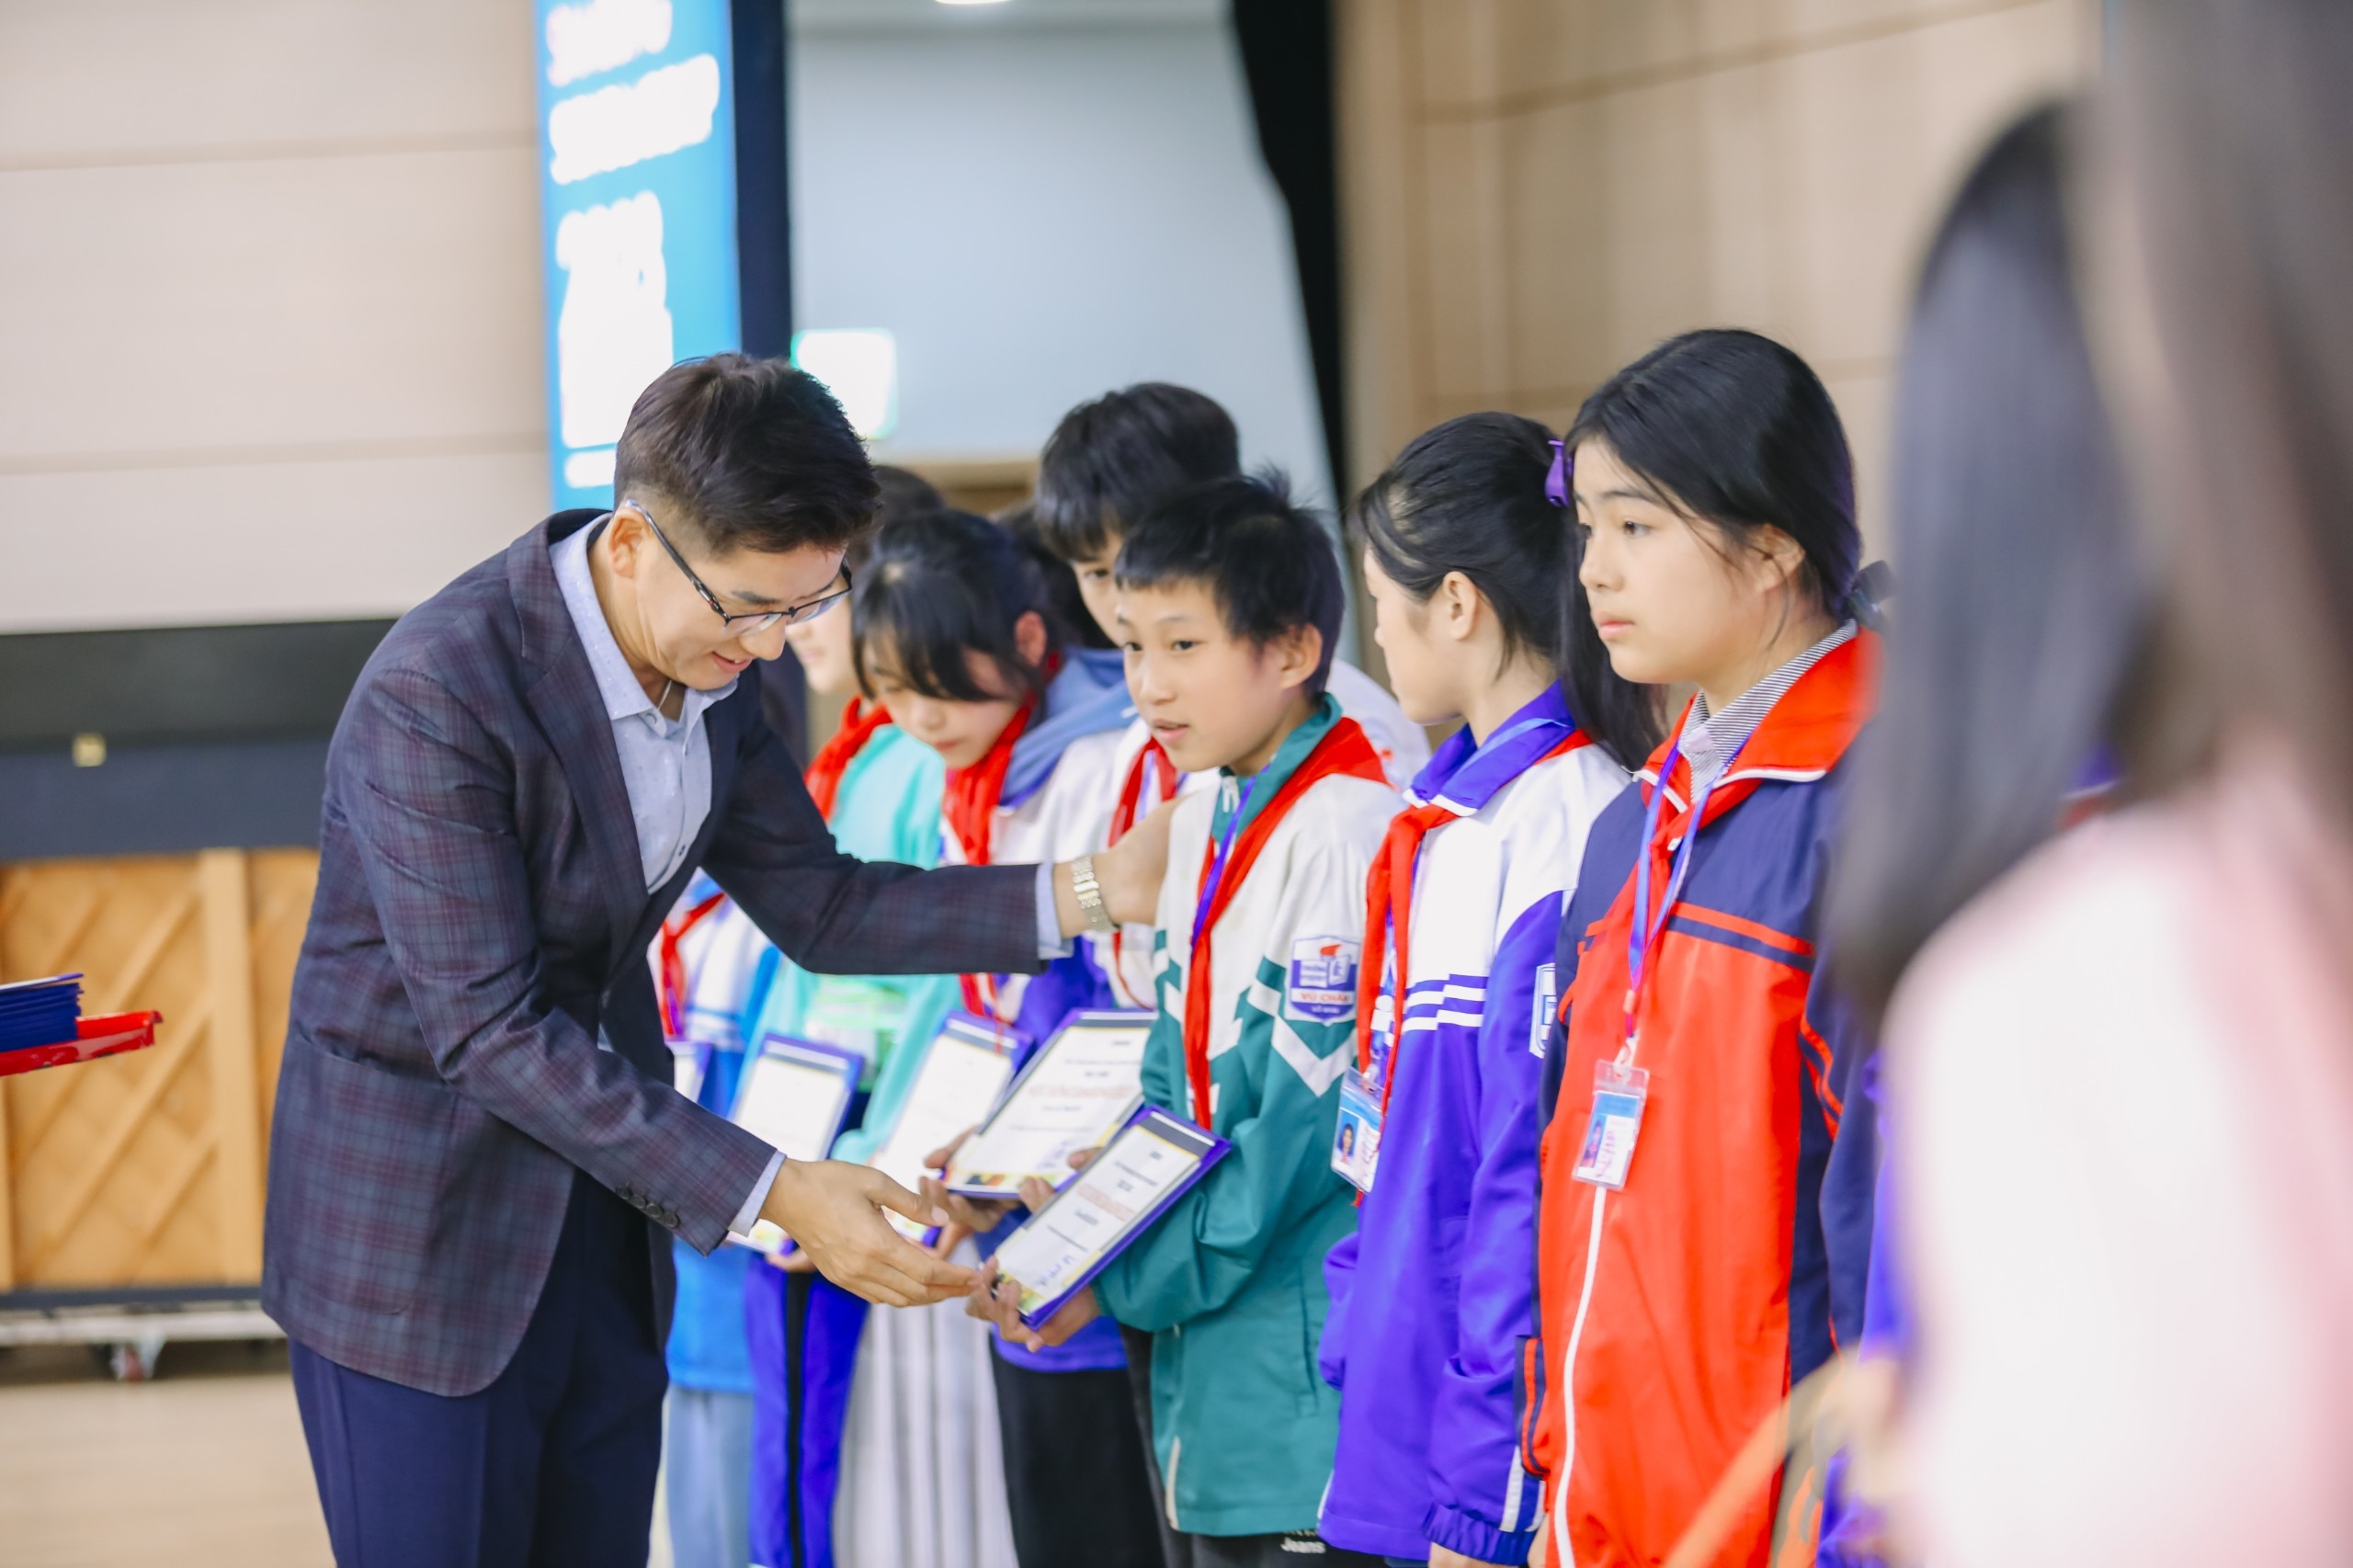 [Photo] 200 học sinh nghèo vượt khó được nhận học bổng “Chắp cánh ước mơ Samsung 2023”